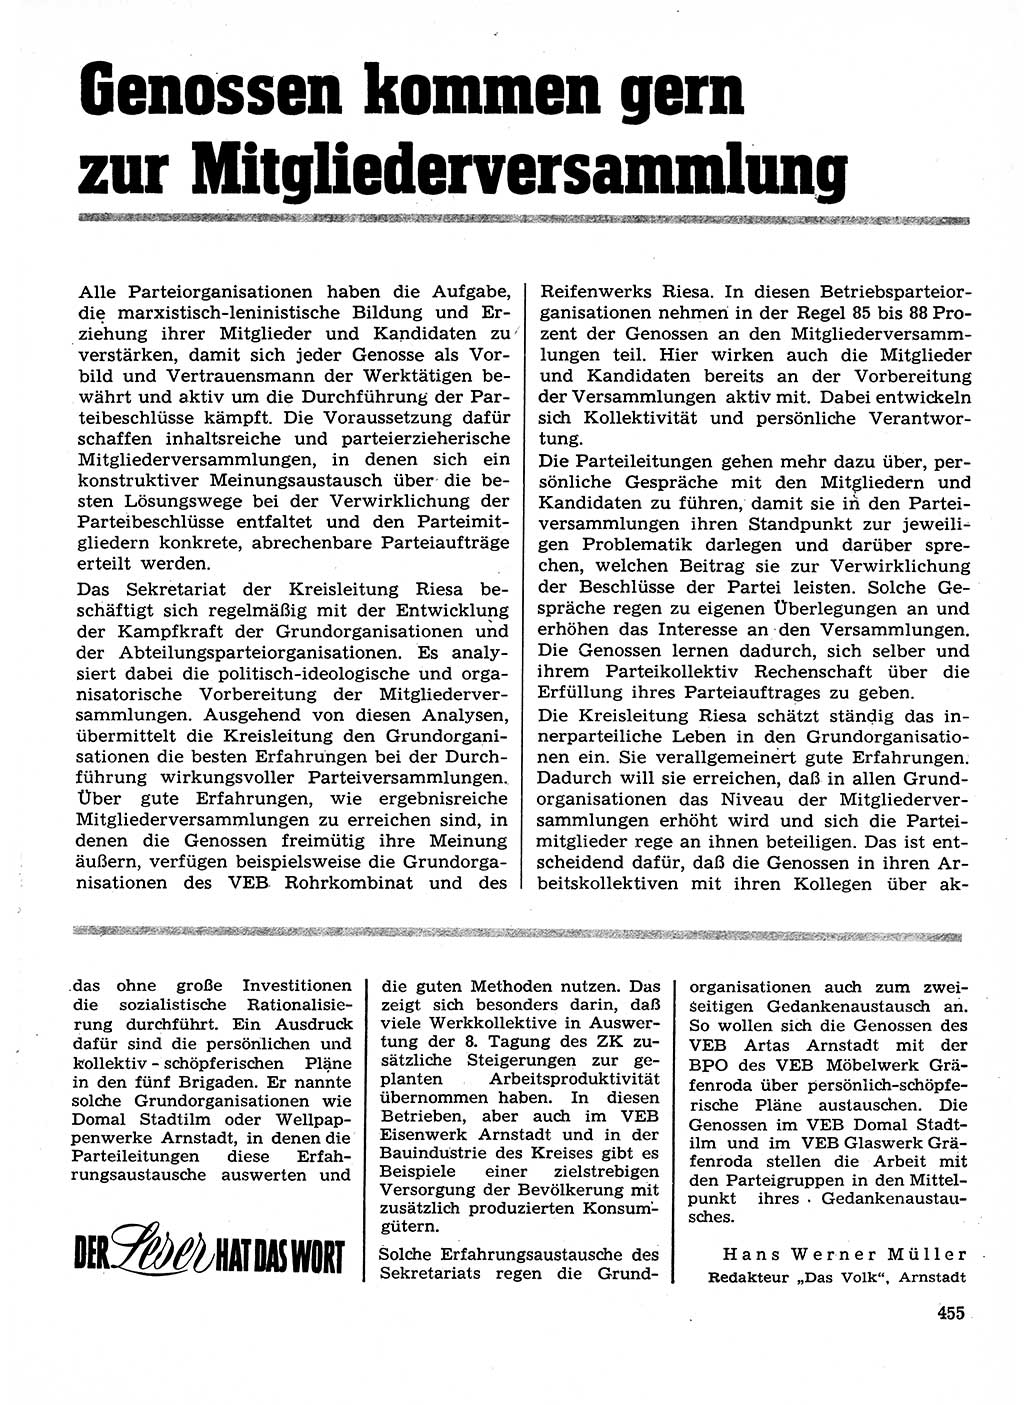 Neuer Weg (NW), Organ des Zentralkomitees (ZK) der SED (Sozialistische Einheitspartei Deutschlands) für Fragen des Parteilebens, 28. Jahrgang [Deutsche Demokratische Republik (DDR)] 1973, Seite 455 (NW ZK SED DDR 1973, S. 455)